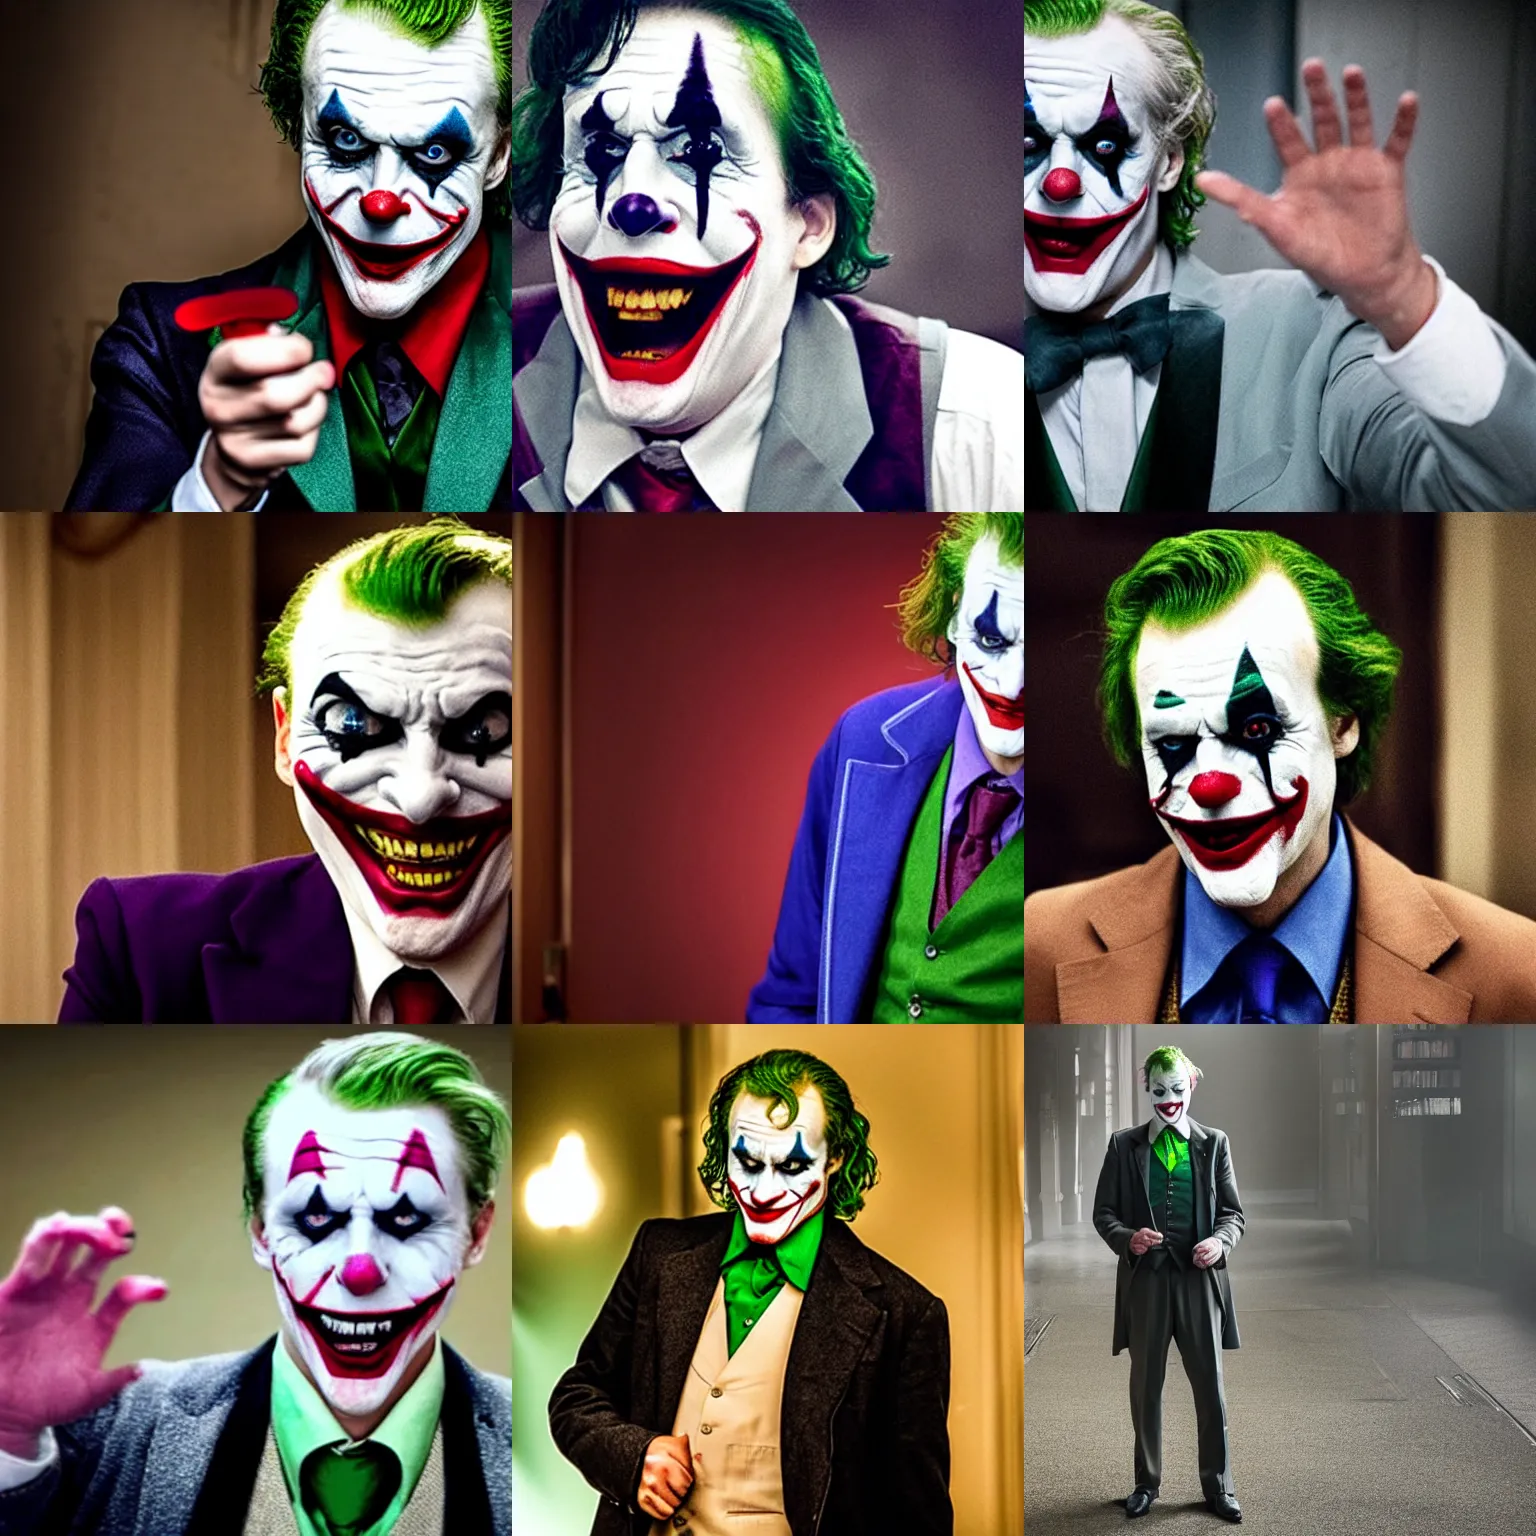 Prompt: A still of Carl Bildt as Joker in Joker